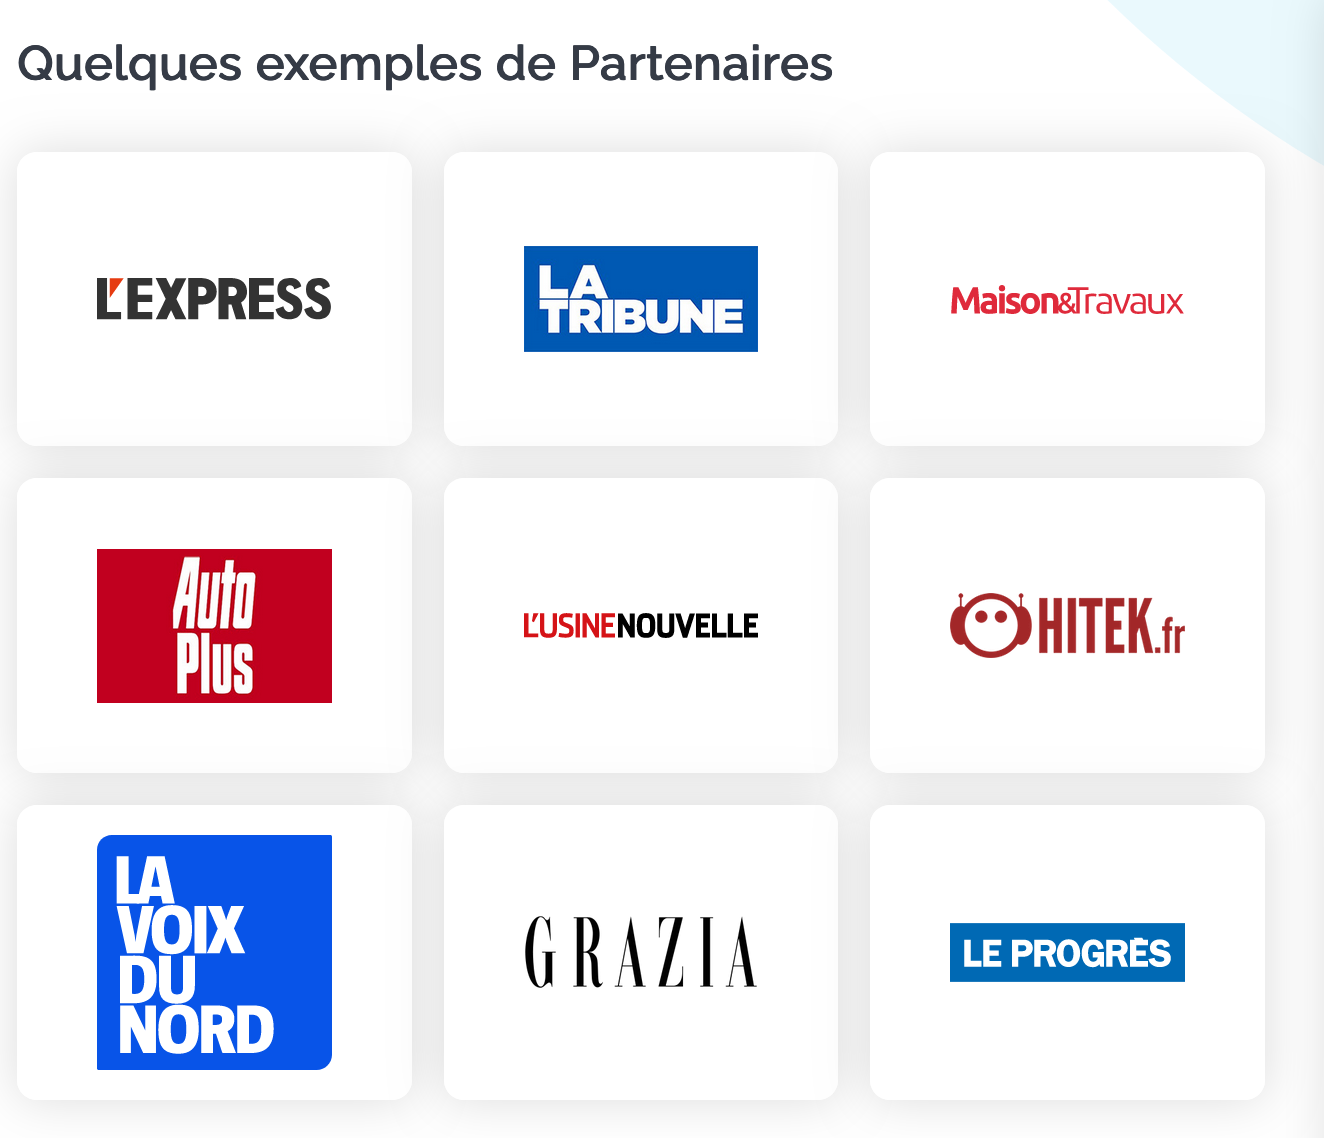 Quelques partenaires de Soumettre.fr pour le volet Relations Presse.